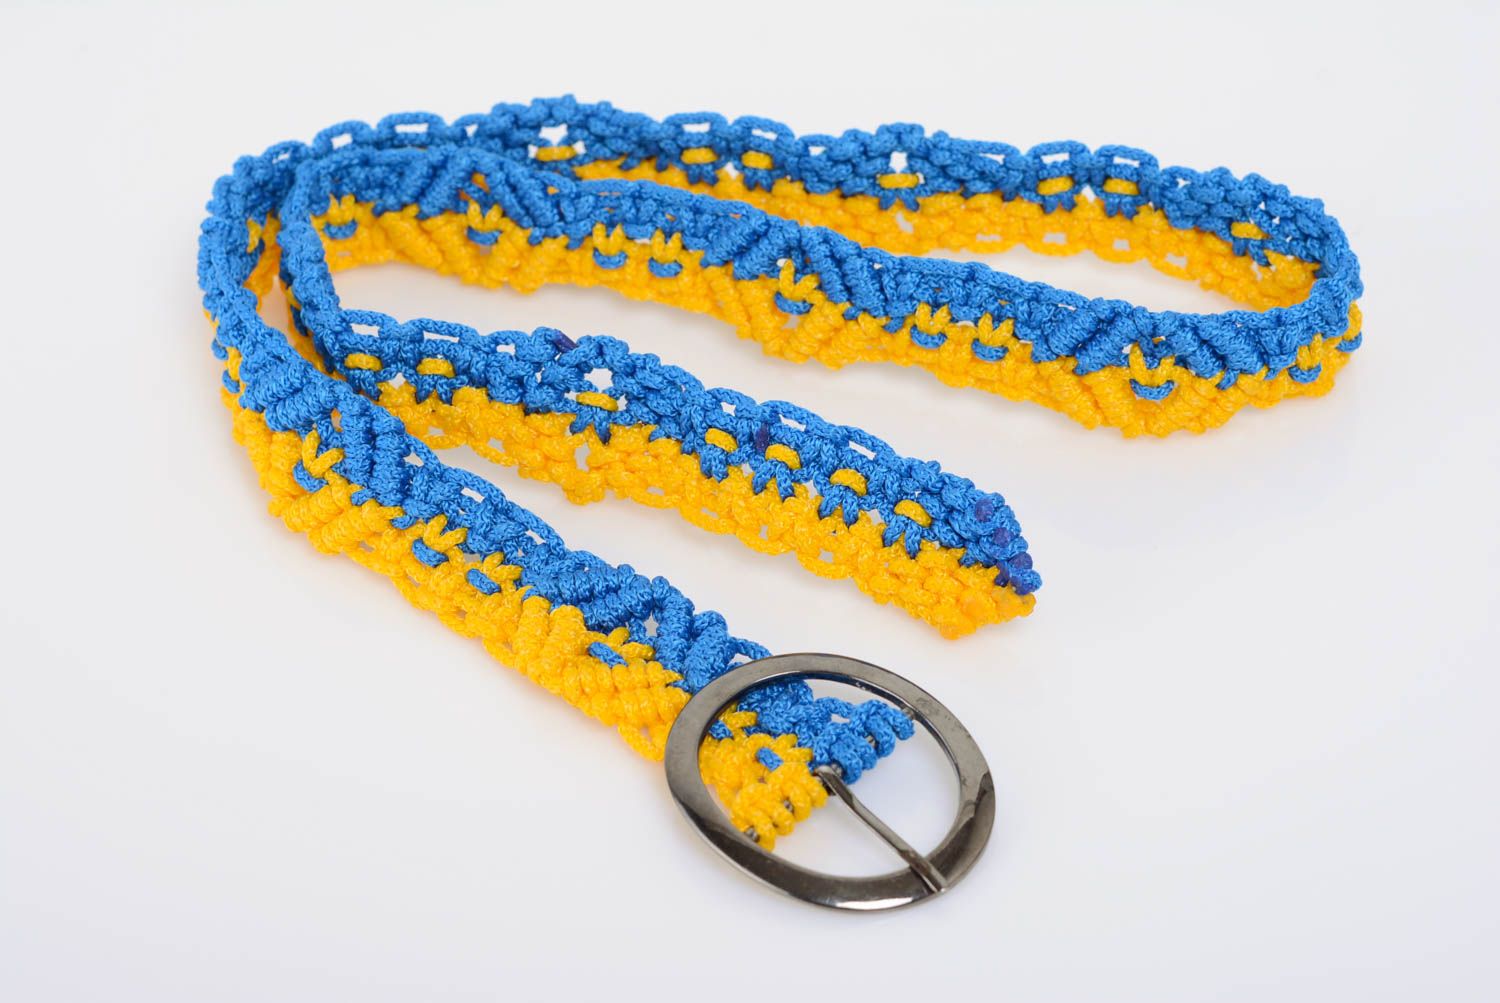 Handgemachter Gürtel in Makramee Technik blau gelb geflochten schön Ukraine foto 2